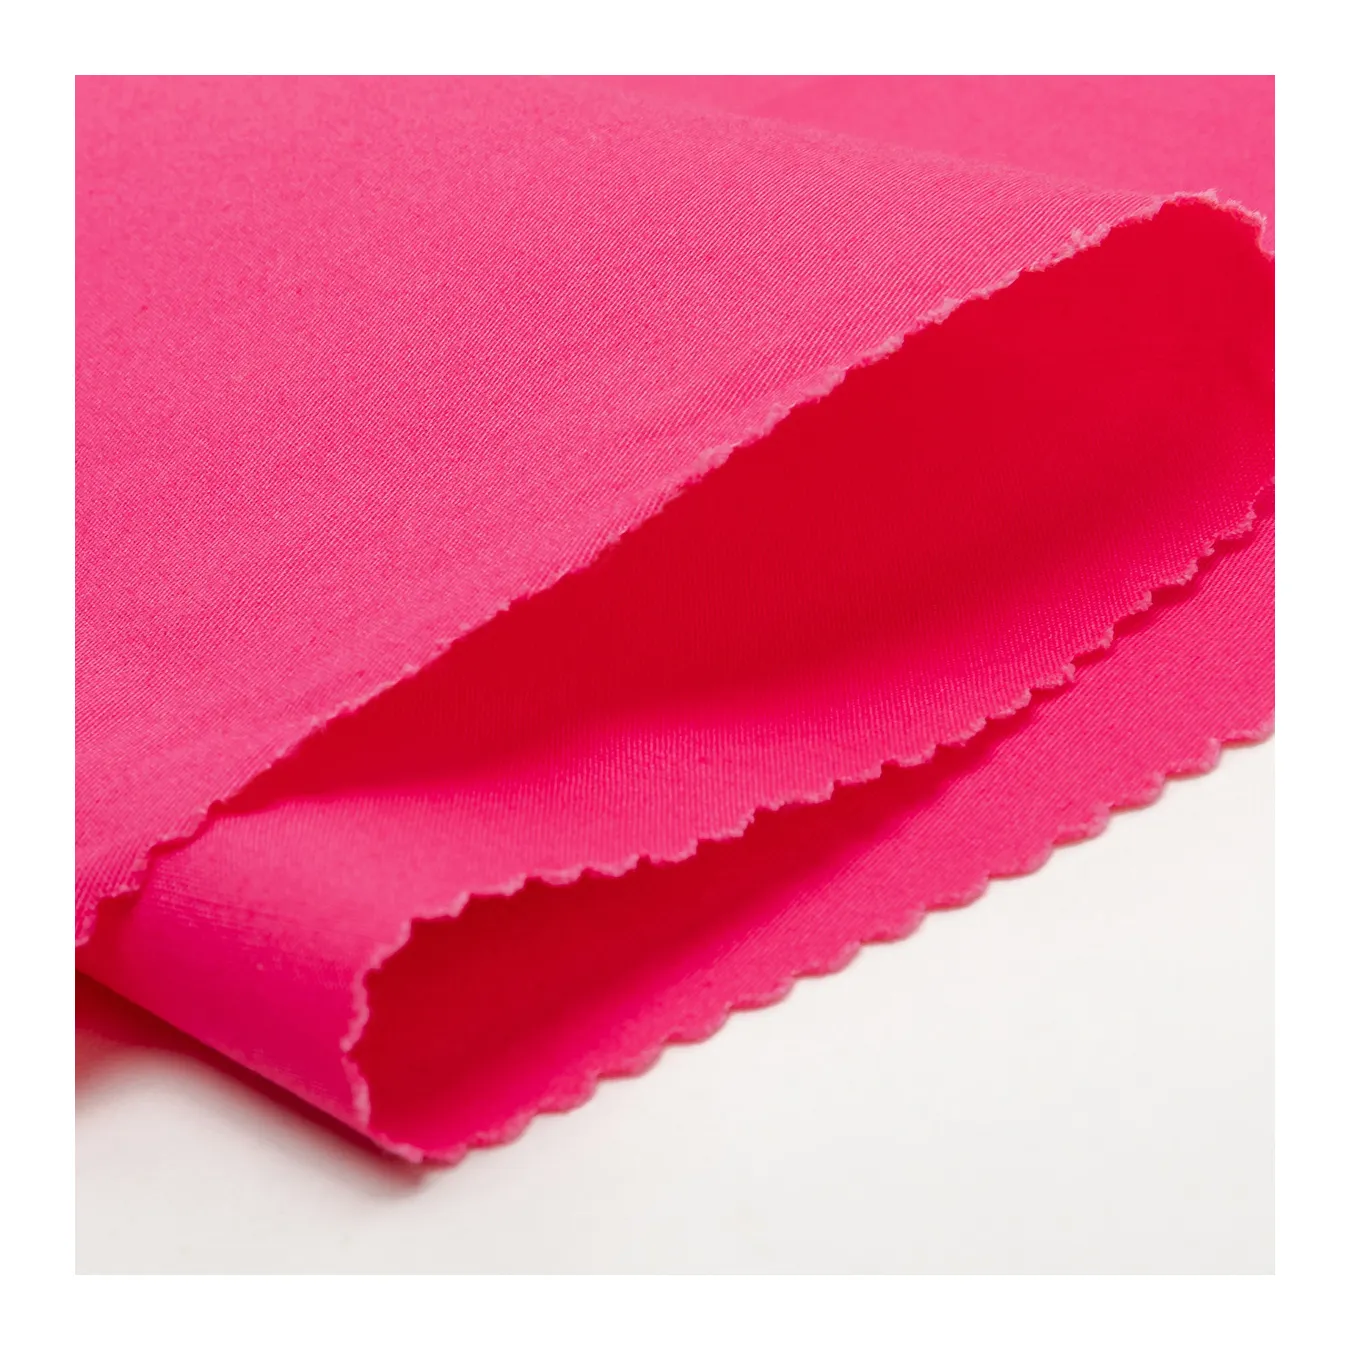 Fornitore cinese di tessuti in cotone chino 100% sottile in saia non elastico per pantaloni di moda